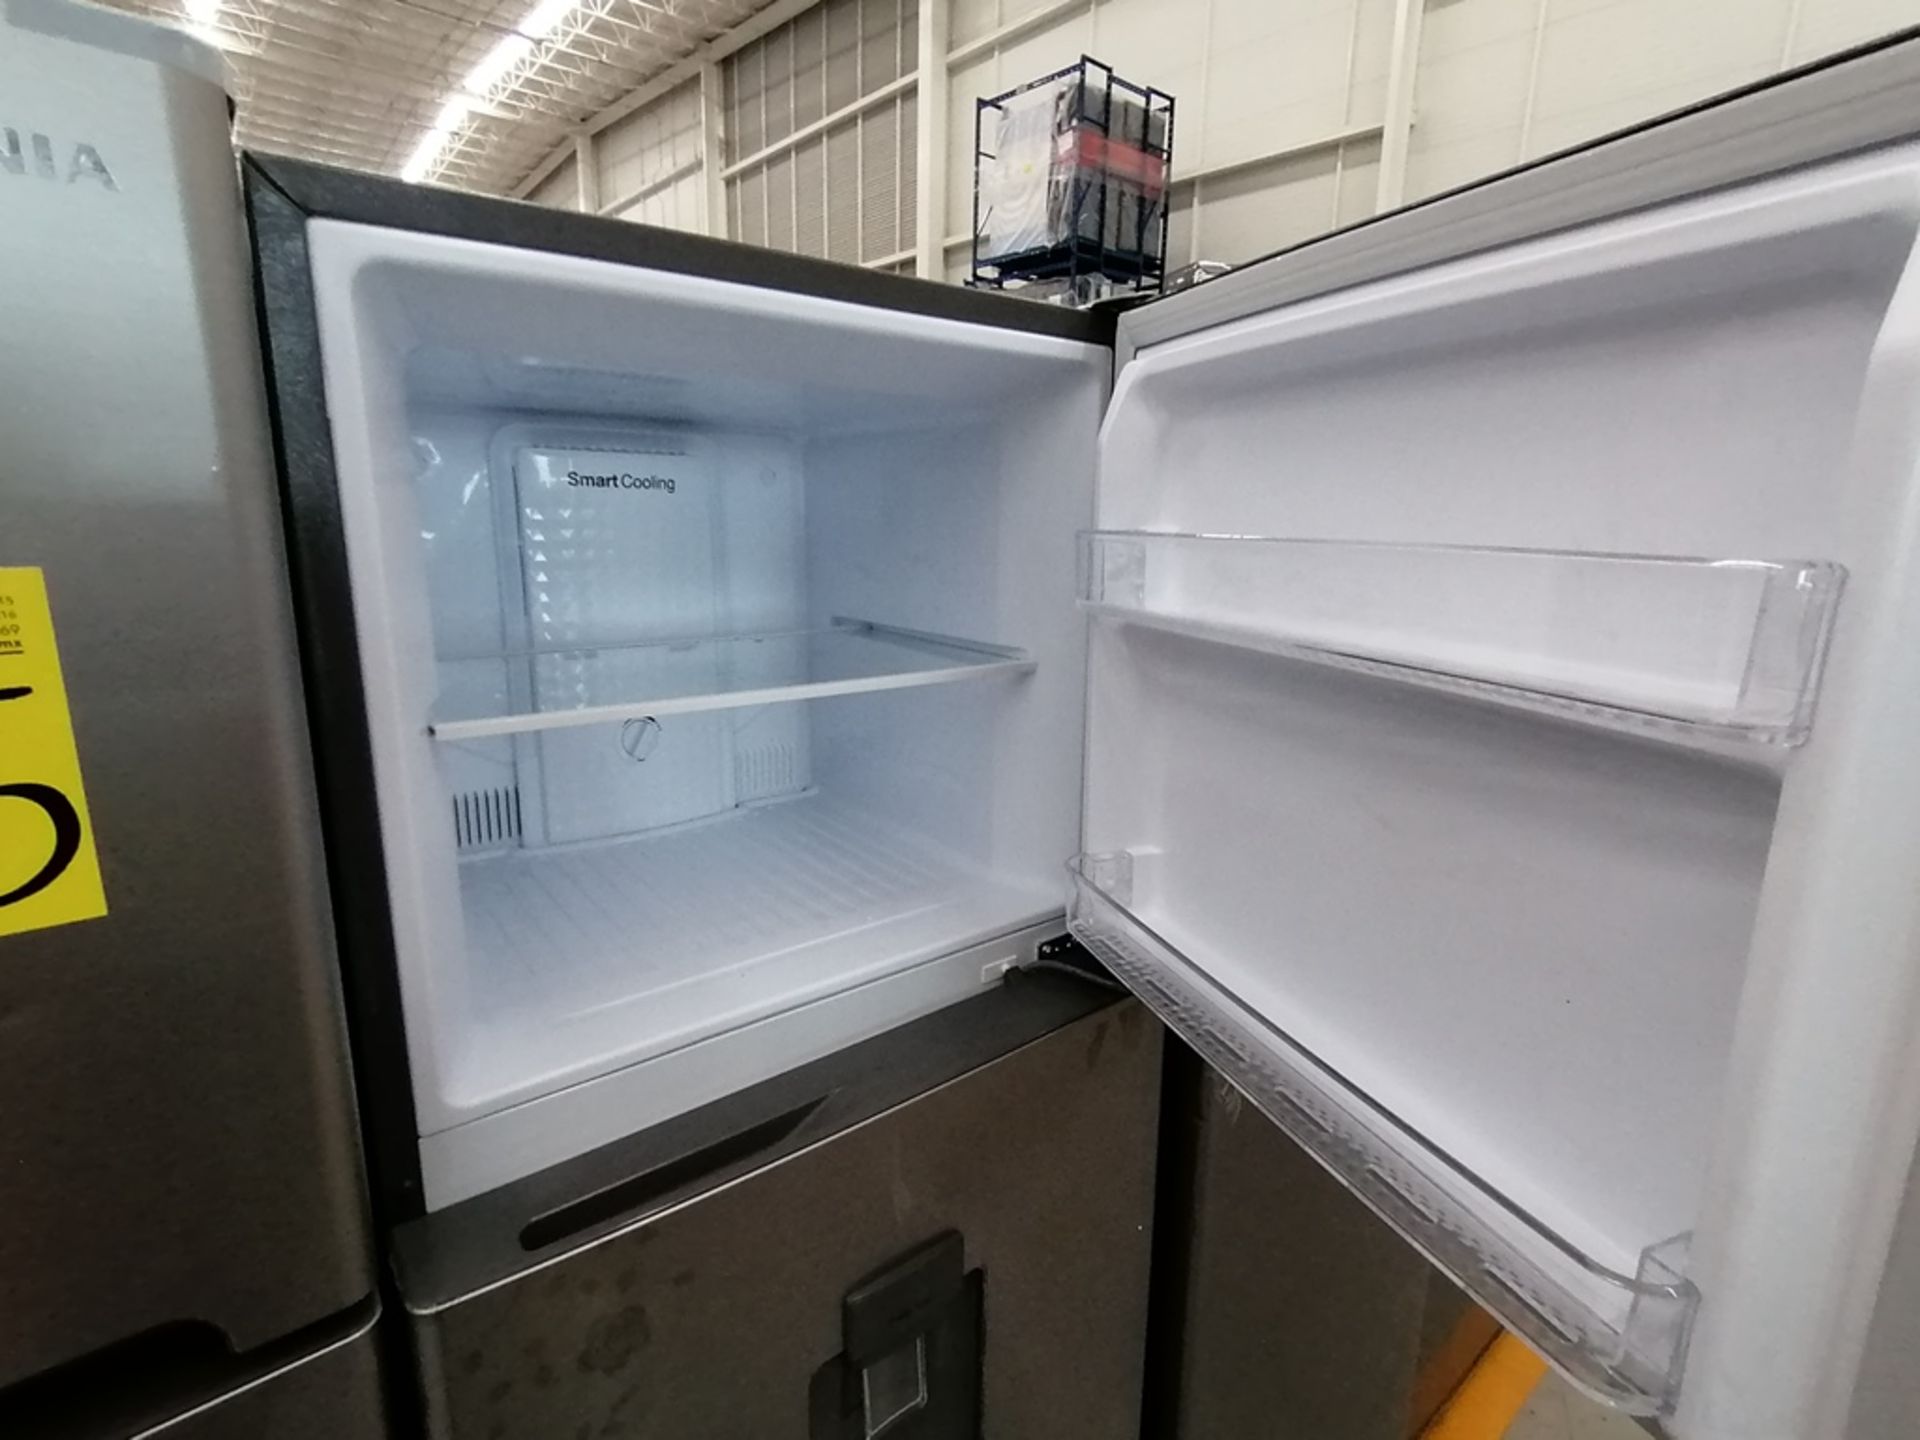 Lote de 2 Refrigeradores, Incluye: 1 Refrigerador con dispensador de agua, Marca Winia, Modelo DFR4 - Image 12 of 16